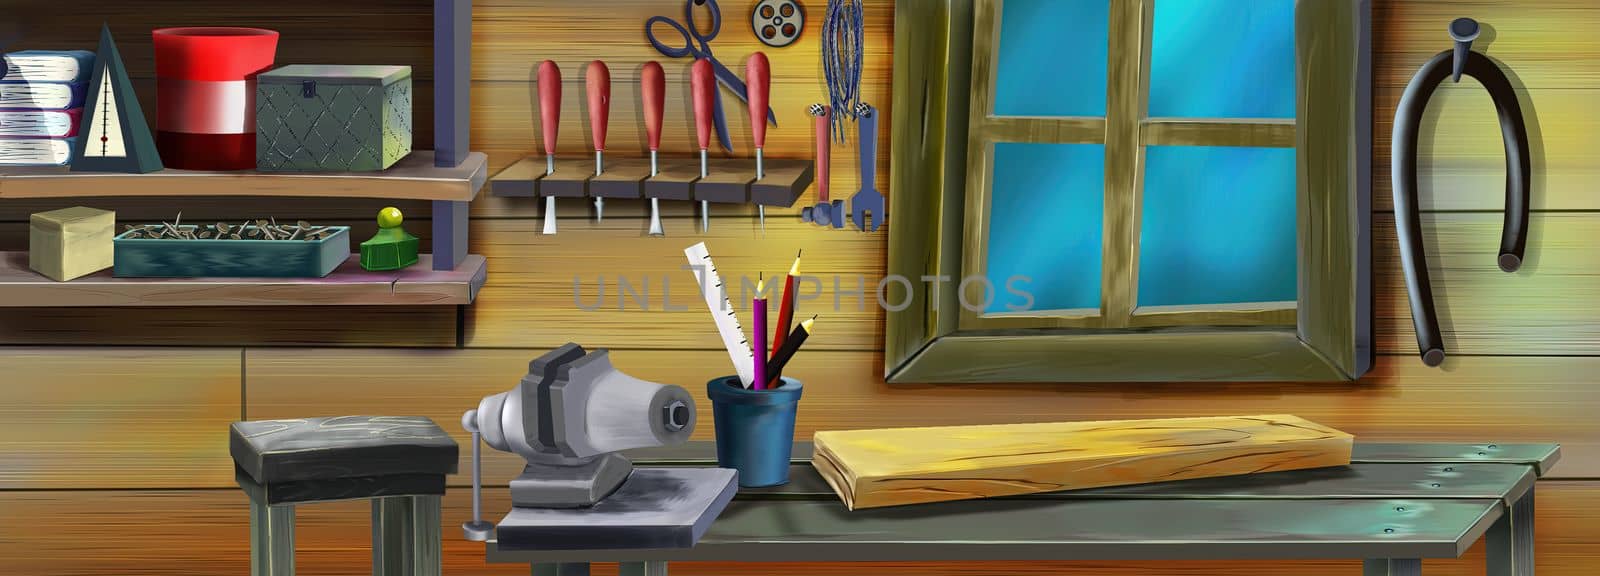 Home workshop illustration by Multipedia